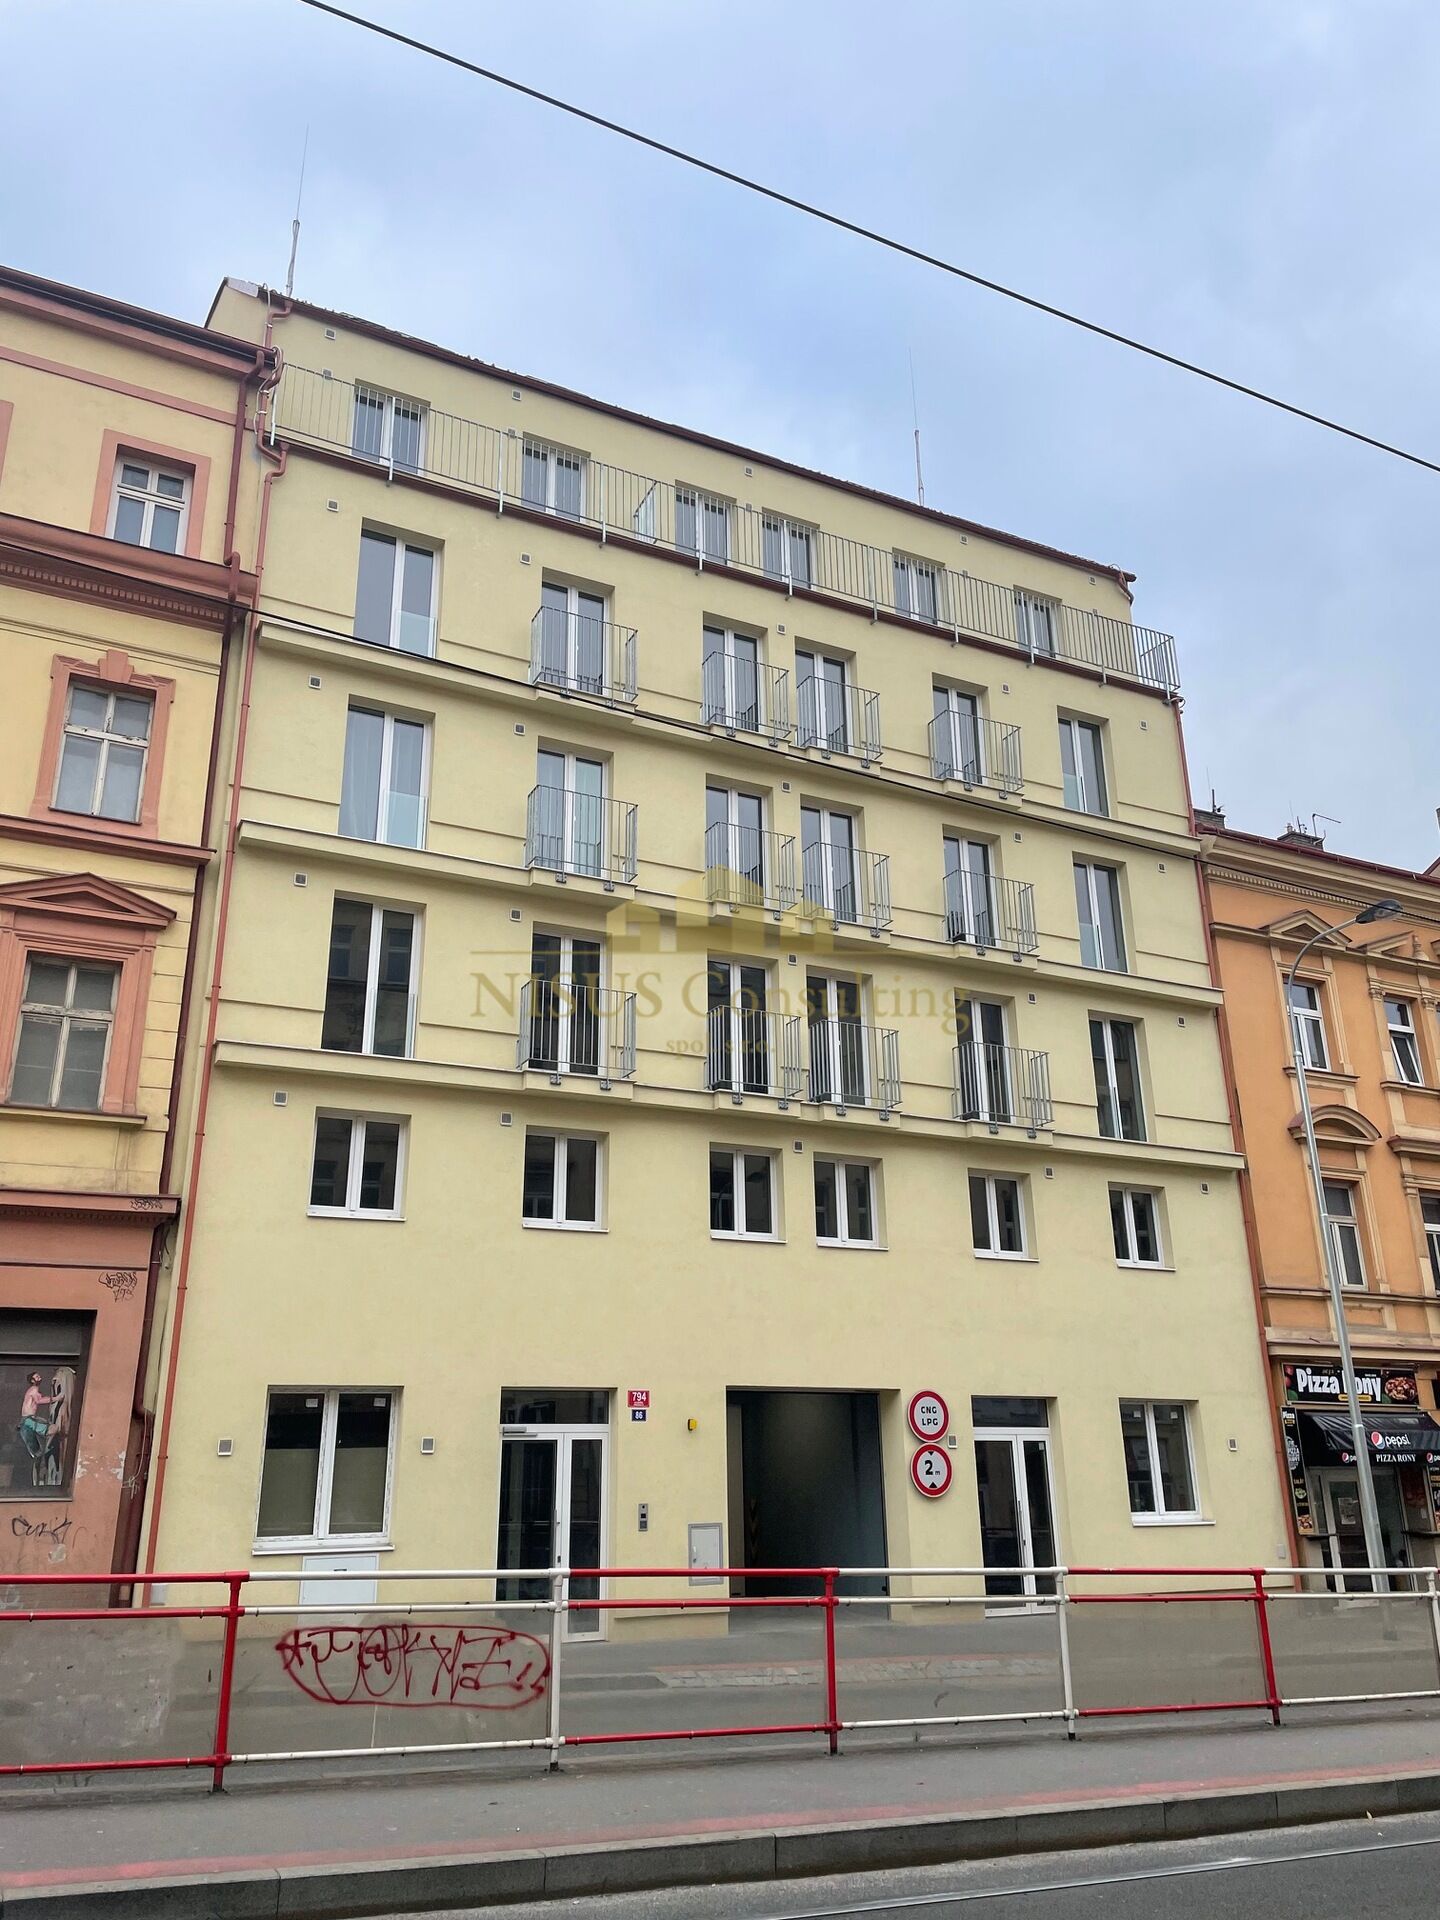 Rezidence Košíře, prodej novostavby bytu 2+kk, 53 m2, balkón, garáž, sklep, Praha 5 - Košíře